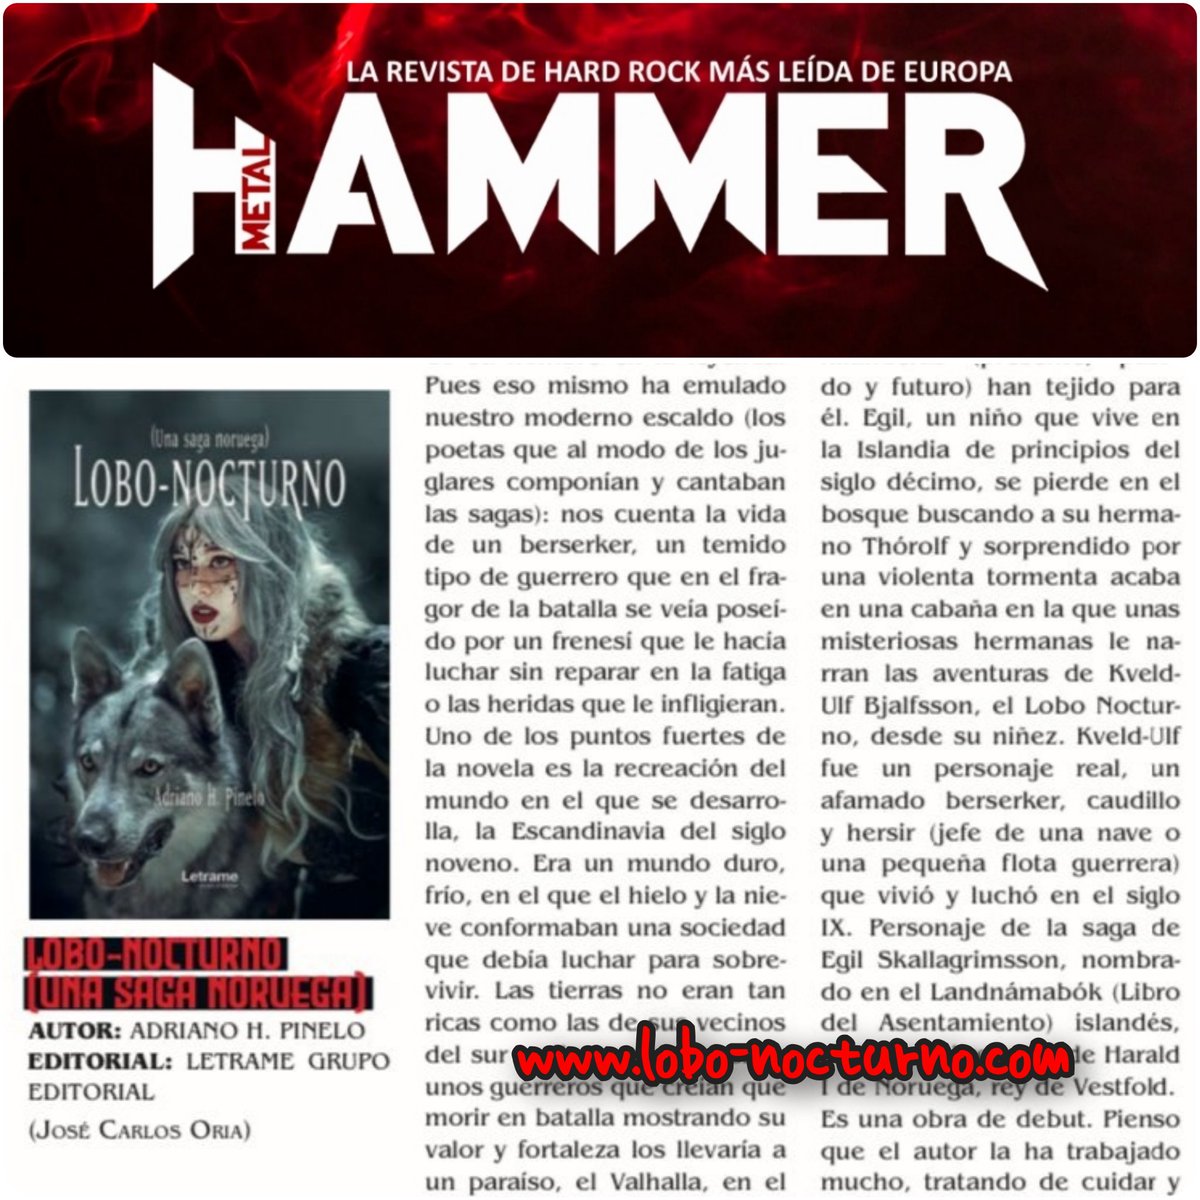 En el número de mayo, la prestigiosa revista de Hard Rock MetalHammer me brinda la oportunidad de dar a conocer mi primera obra Lobo-Nocturno con una crítica a mi novela que me parece de lo más interesante. No os la perdáis.
Skol!!! 🤘⚔️
#lobonocturno
#magazinemetalhammer